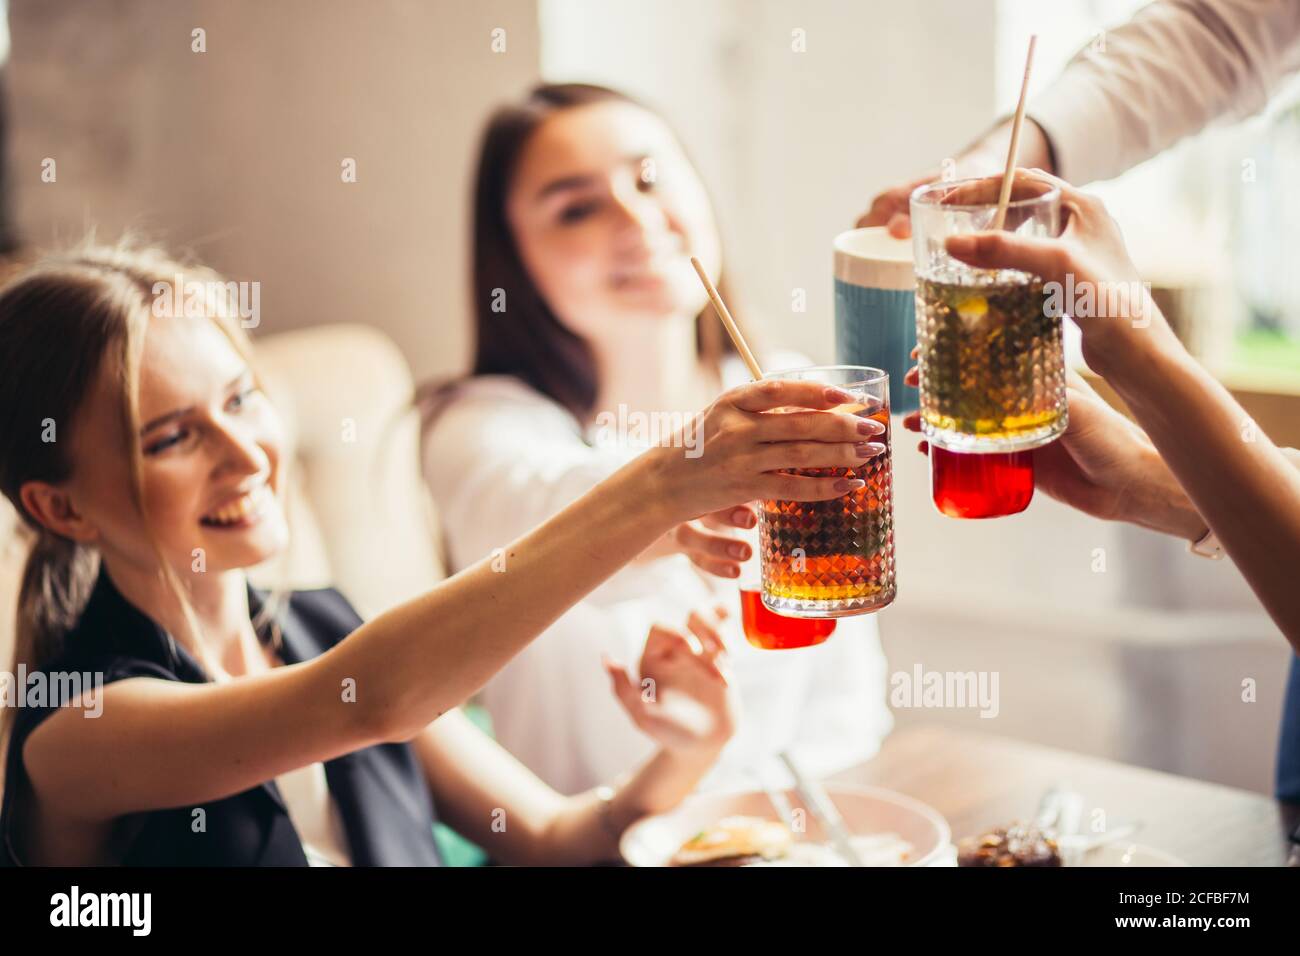 Menschen Jubel Feier Toast Glück Zweisamkeit Konzept Stockfoto